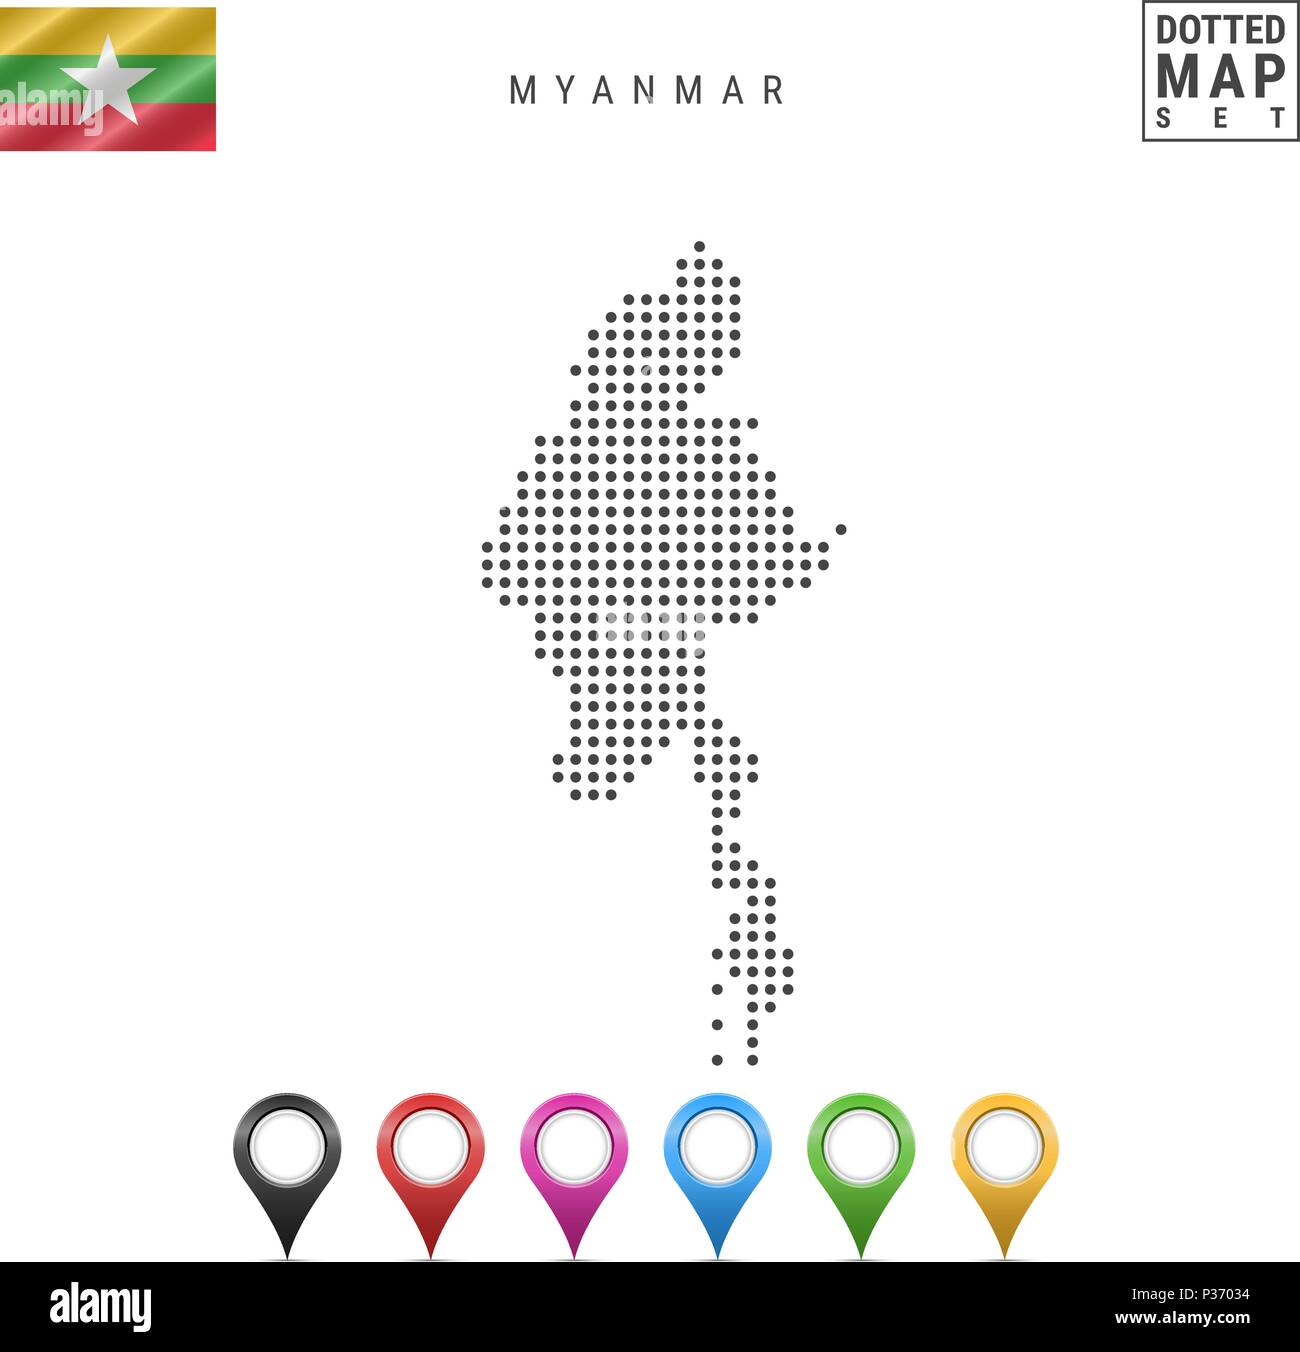 Vektor gepunktete Karte von Myanmar. Einfache Silhouette von Myanmar. Nationalflagge von Myanmar. Eingestellt von bunten Karte Markierungen Stock Vektor